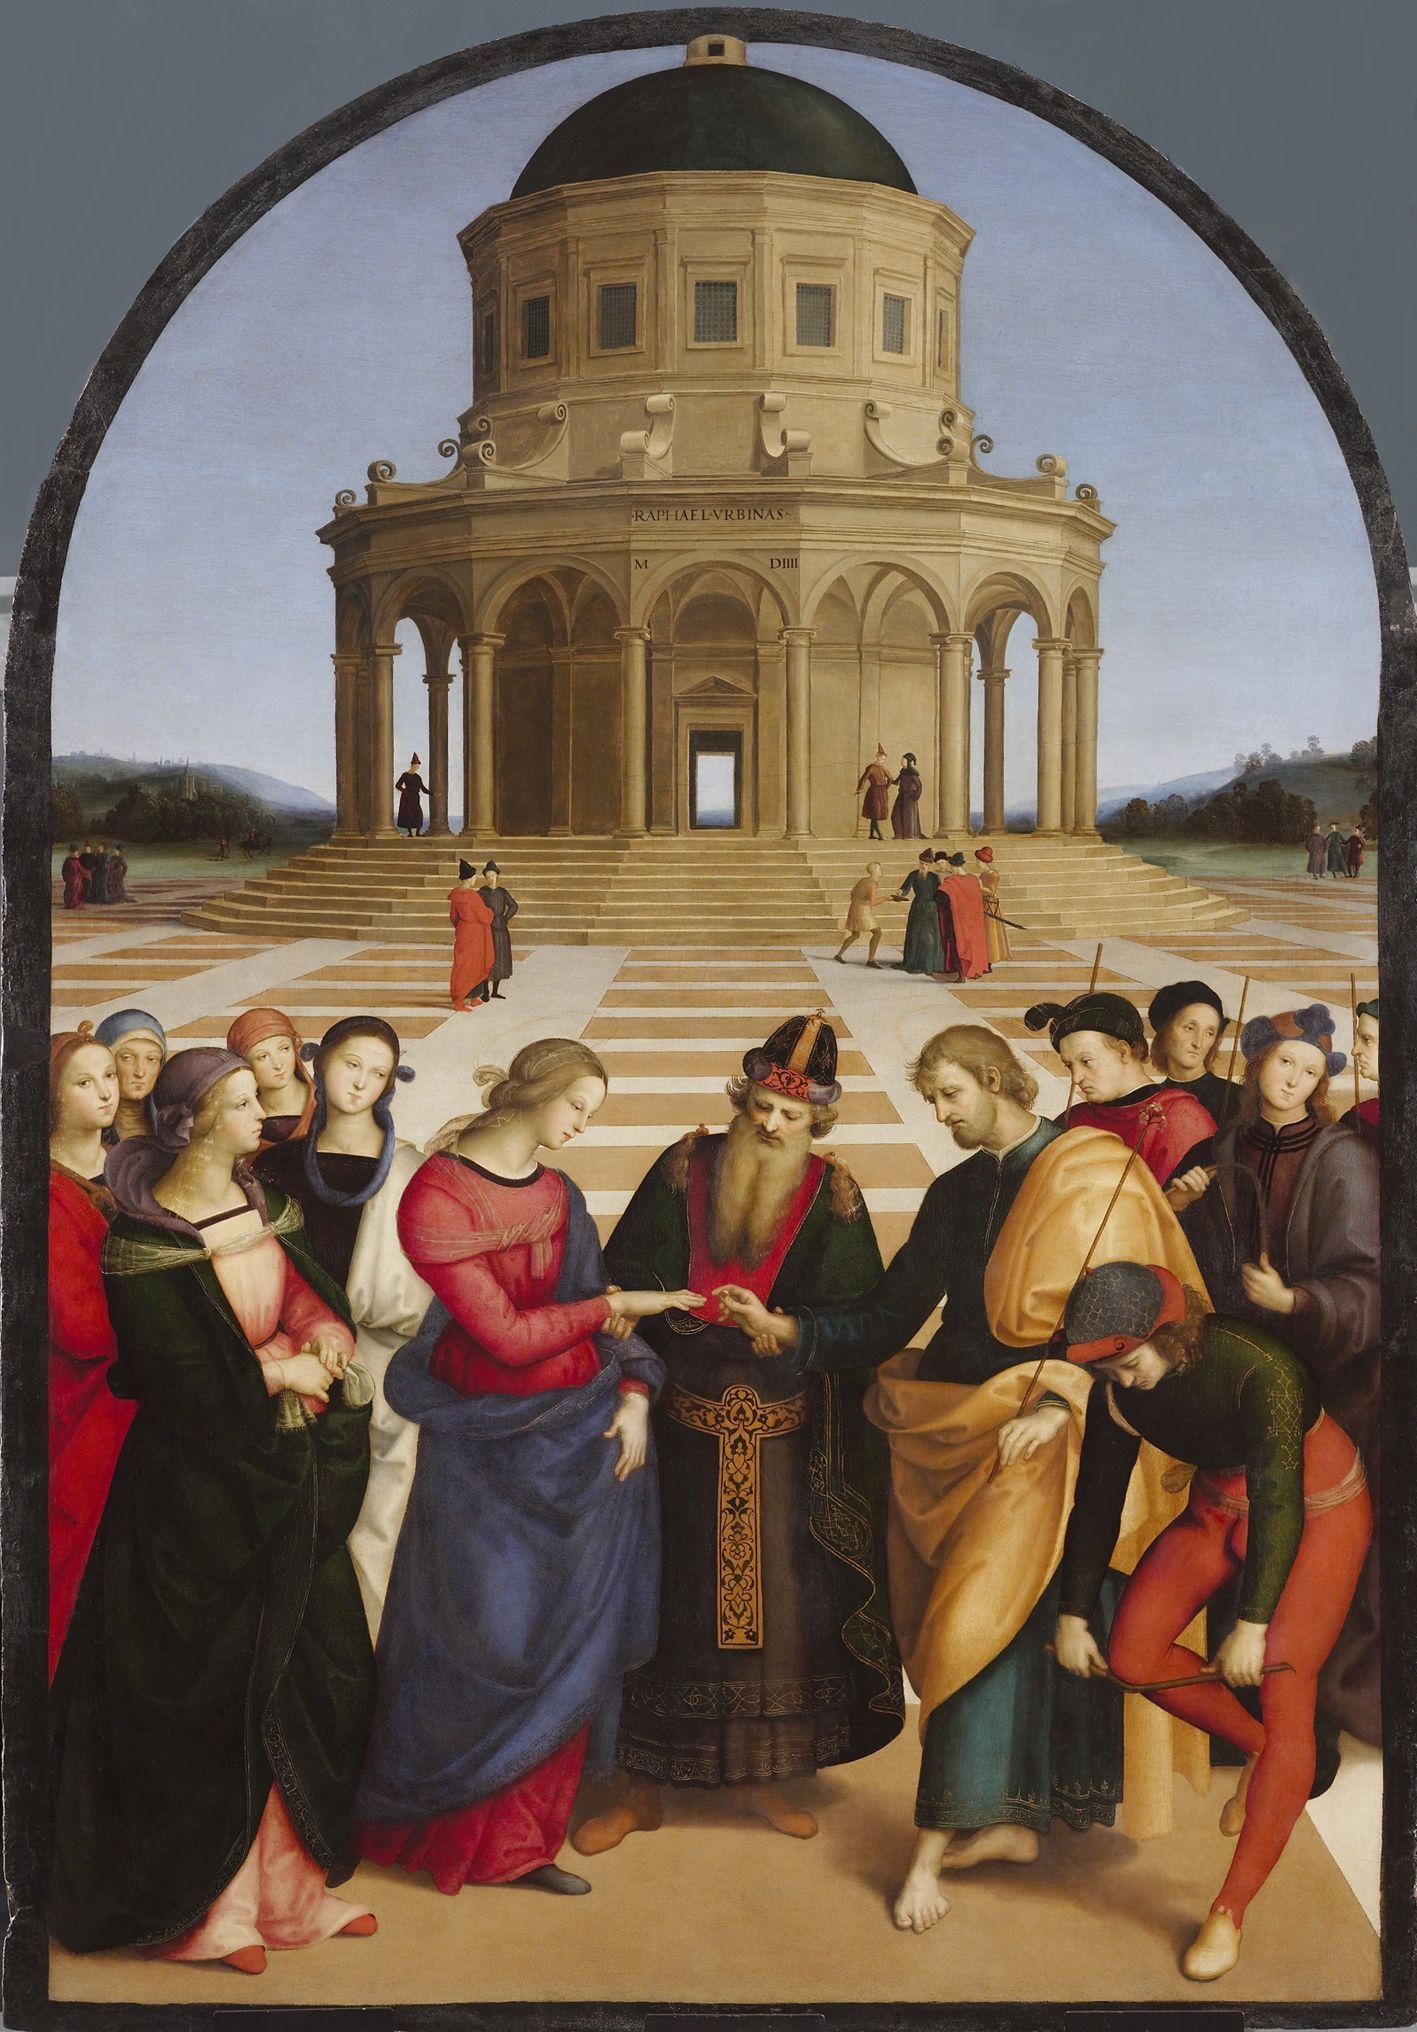 Jungfruns bröllop by Raphael Santi - 1504 - 170 x 118 cm 